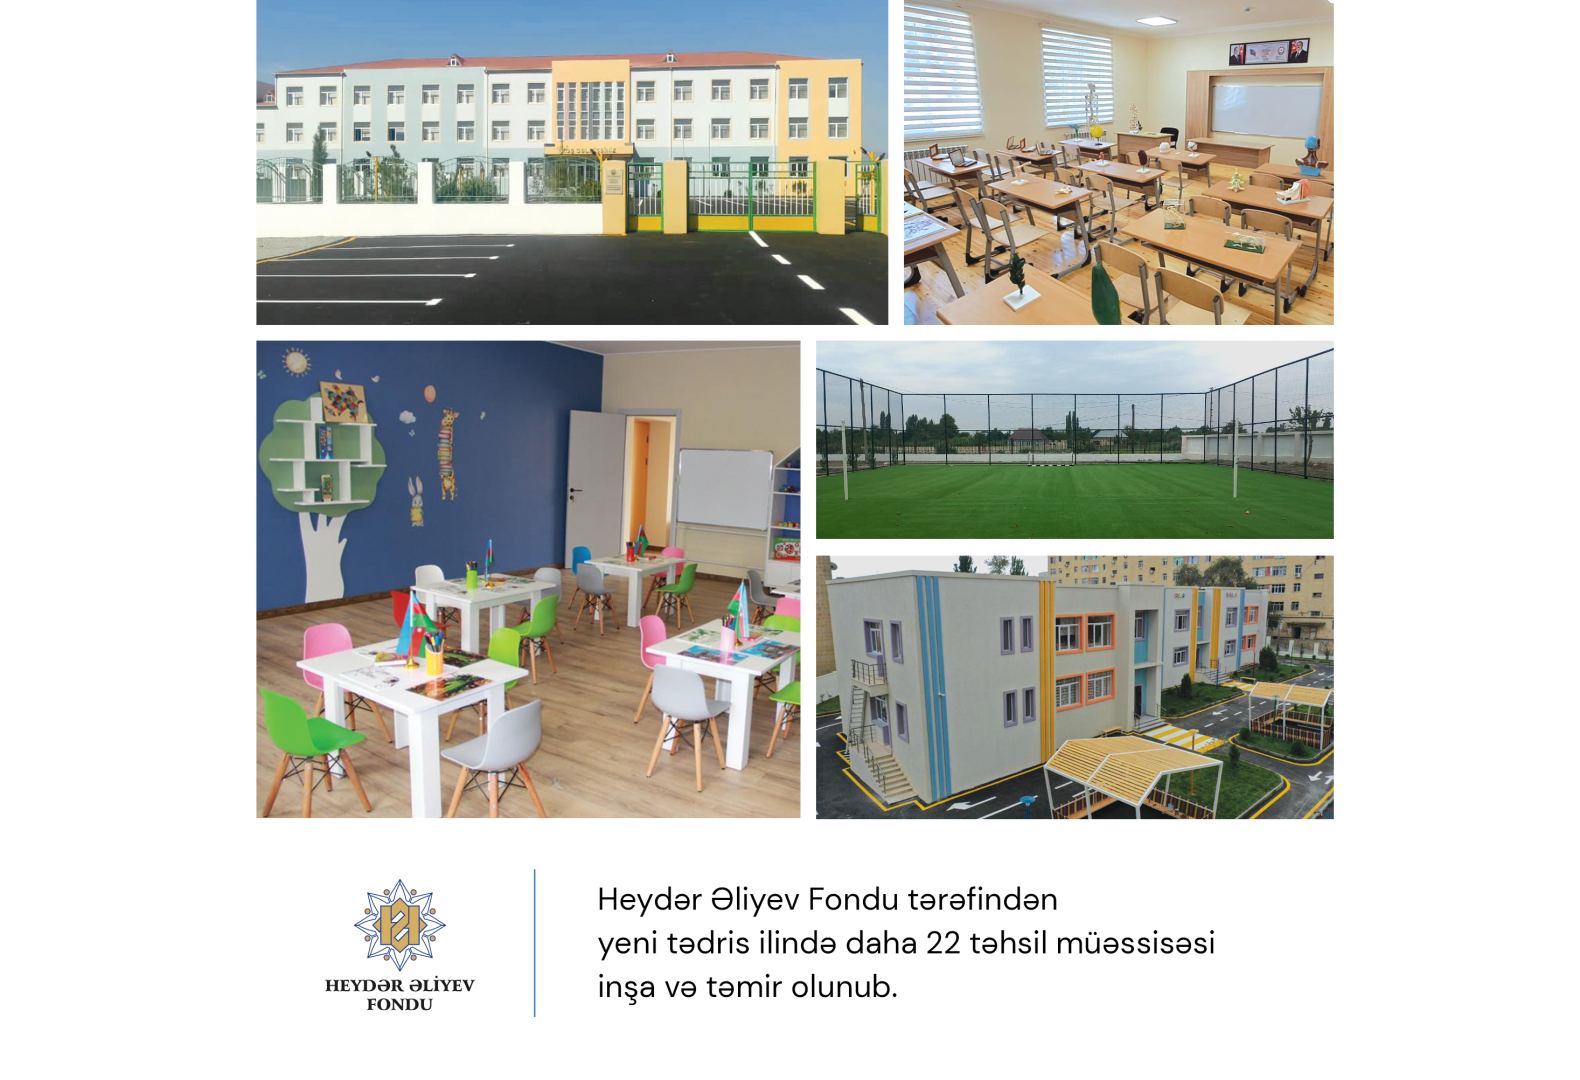 Будут сданы в эксплуатацию отремонтированные Фондом Гейдара Алиева школы и детские сады